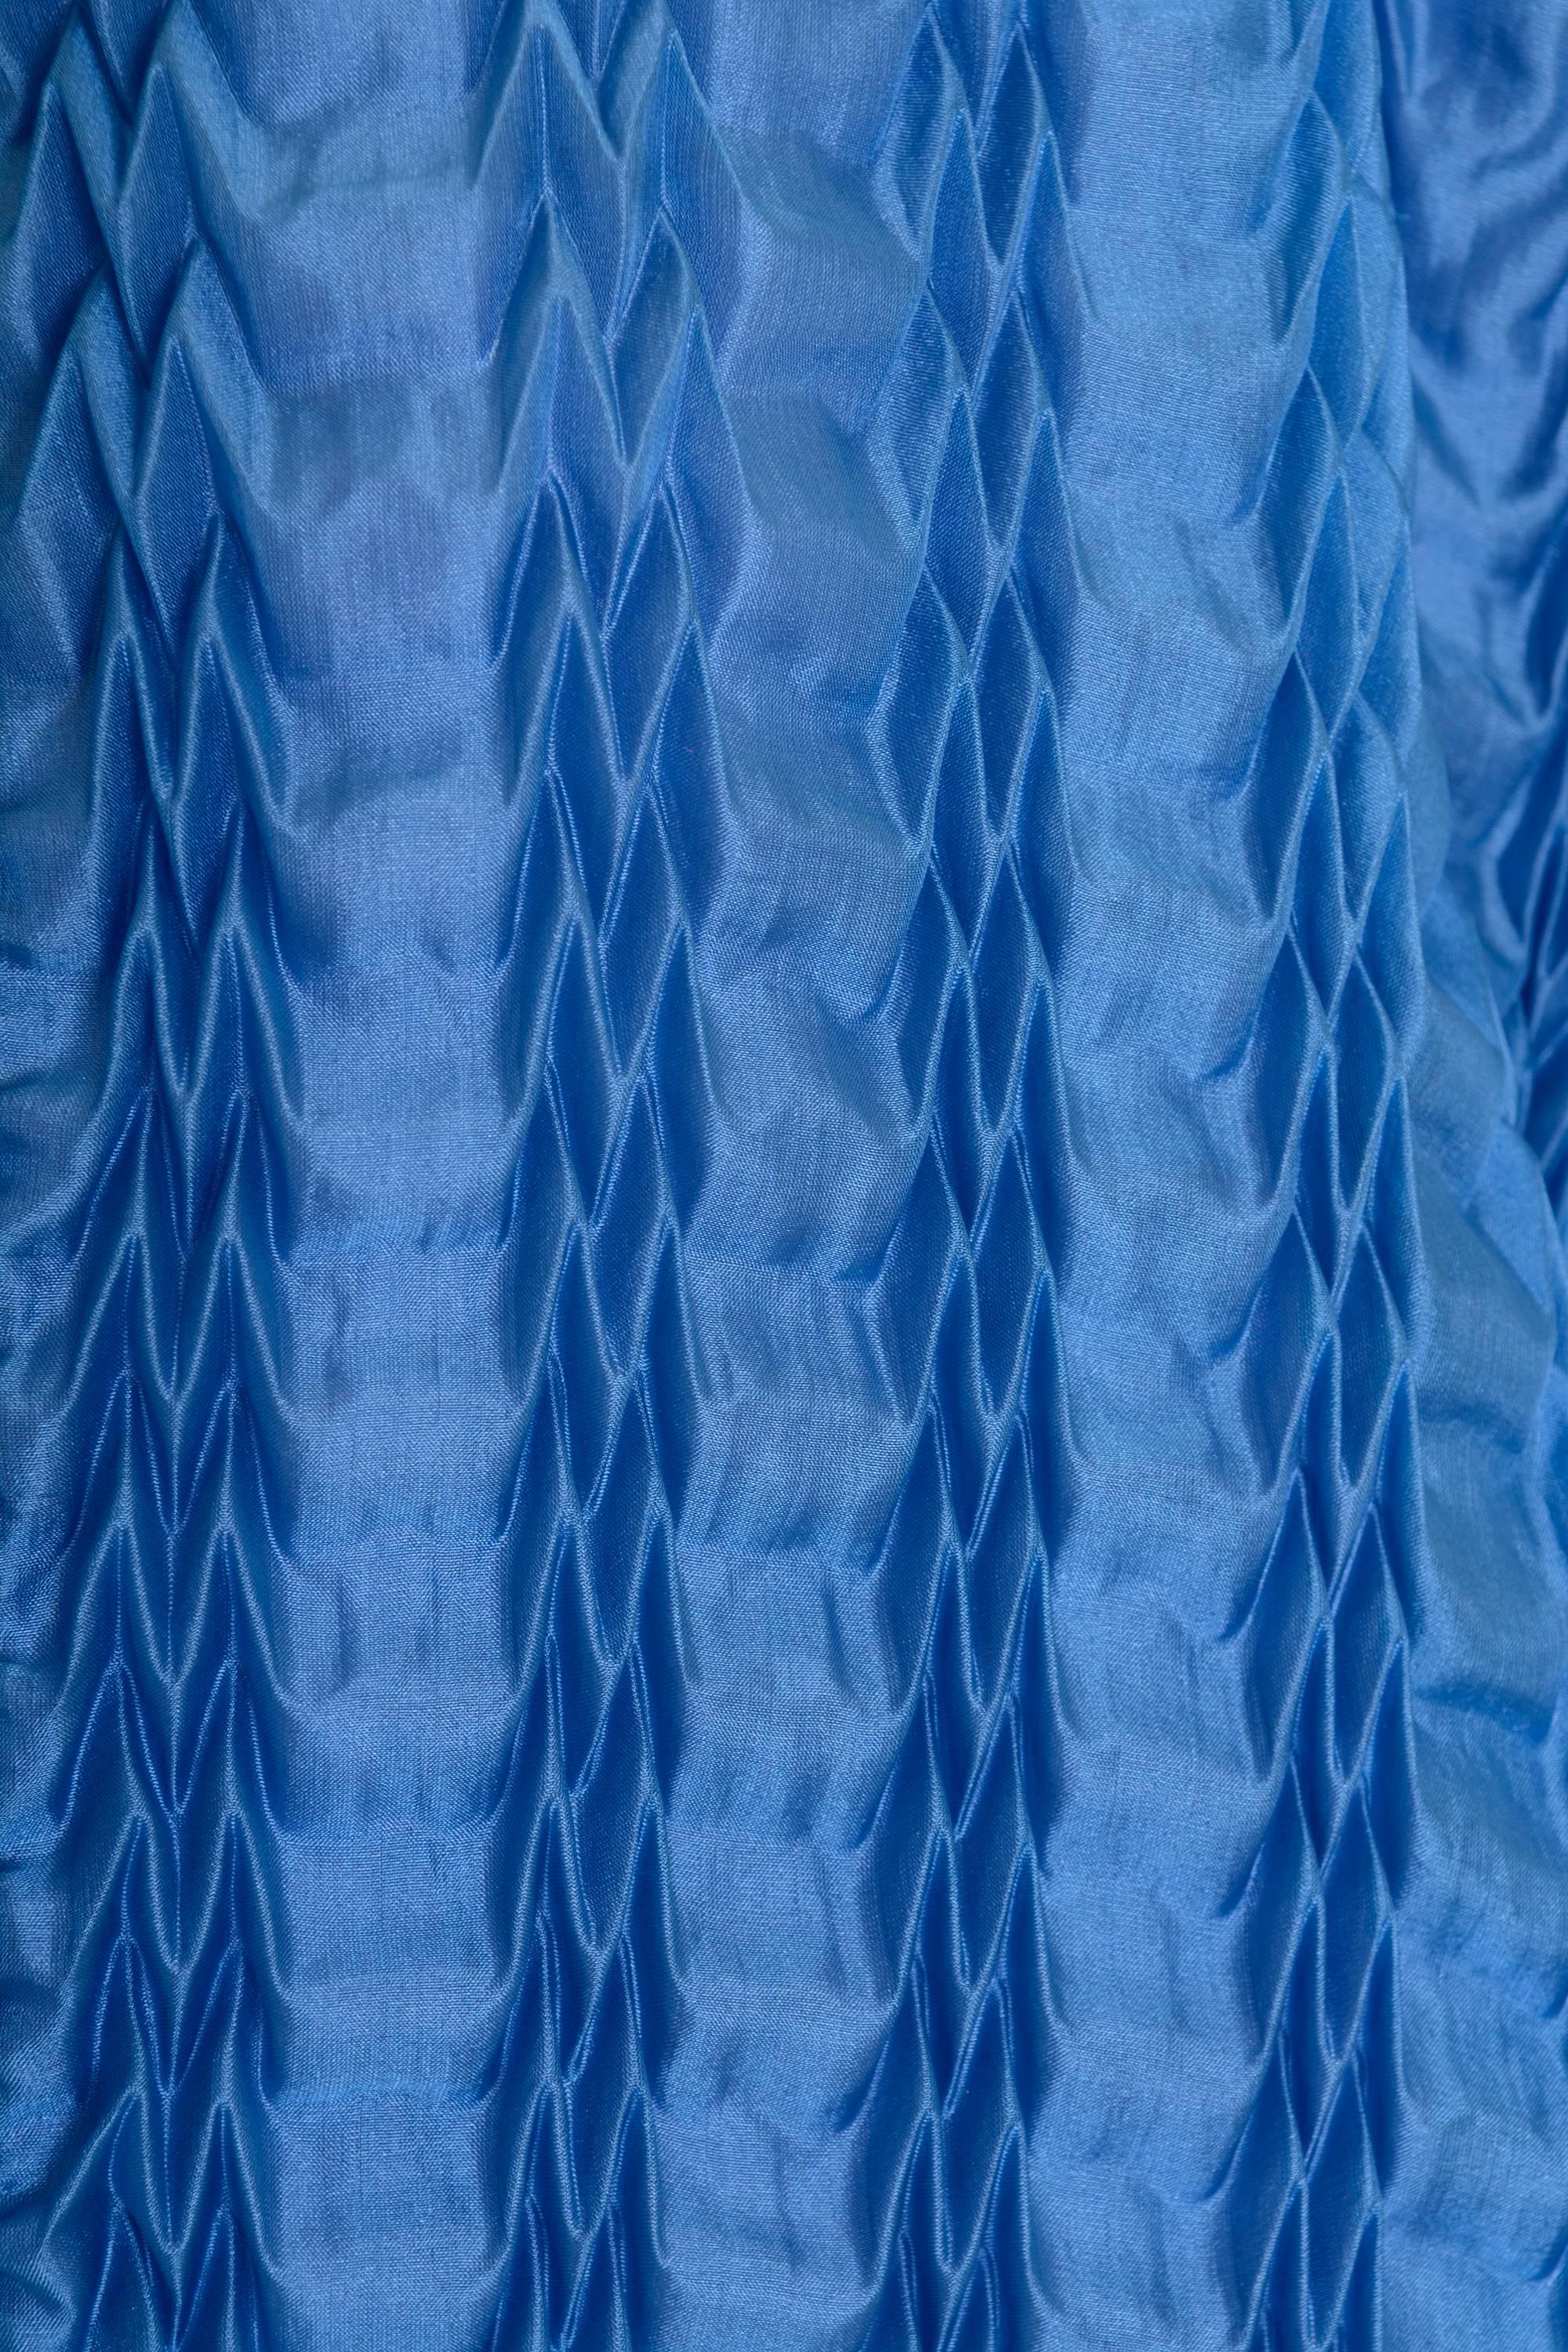 Blue 1980s KRIZIA Turquoise Silk Pleateds Bomber Jacket